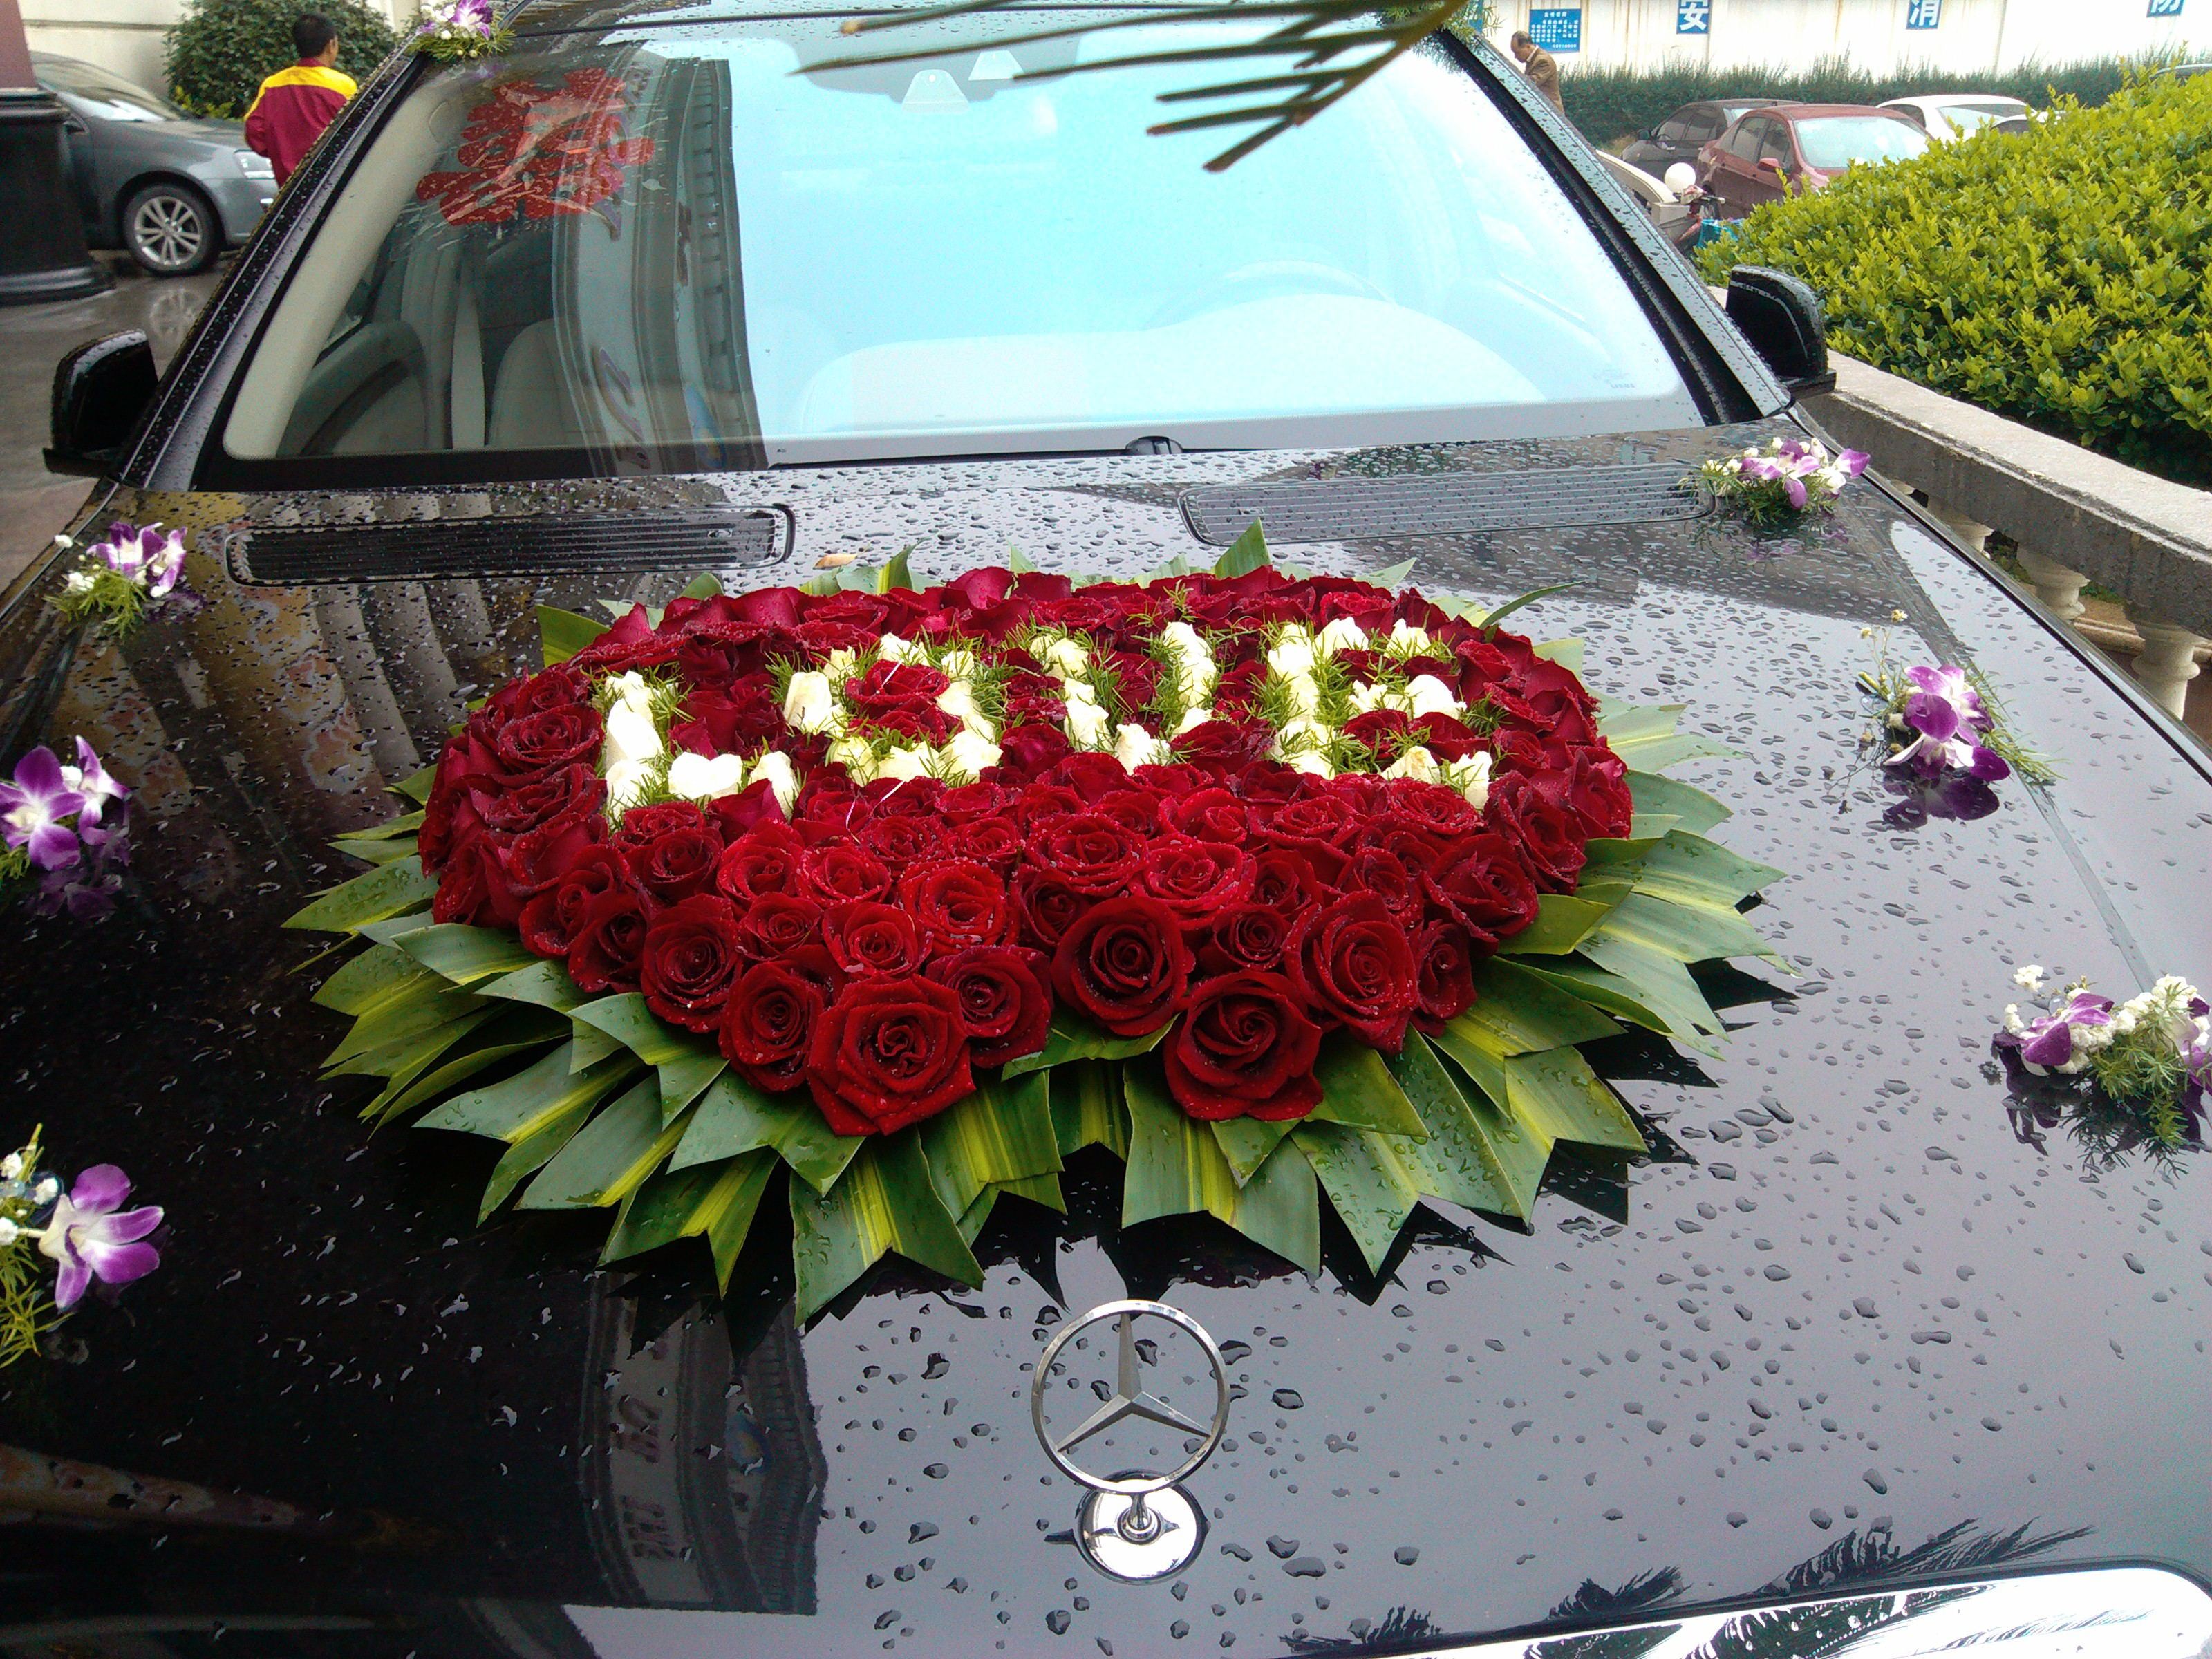 婚车用心形鲜花来布置,简直浪漫的无以复加!